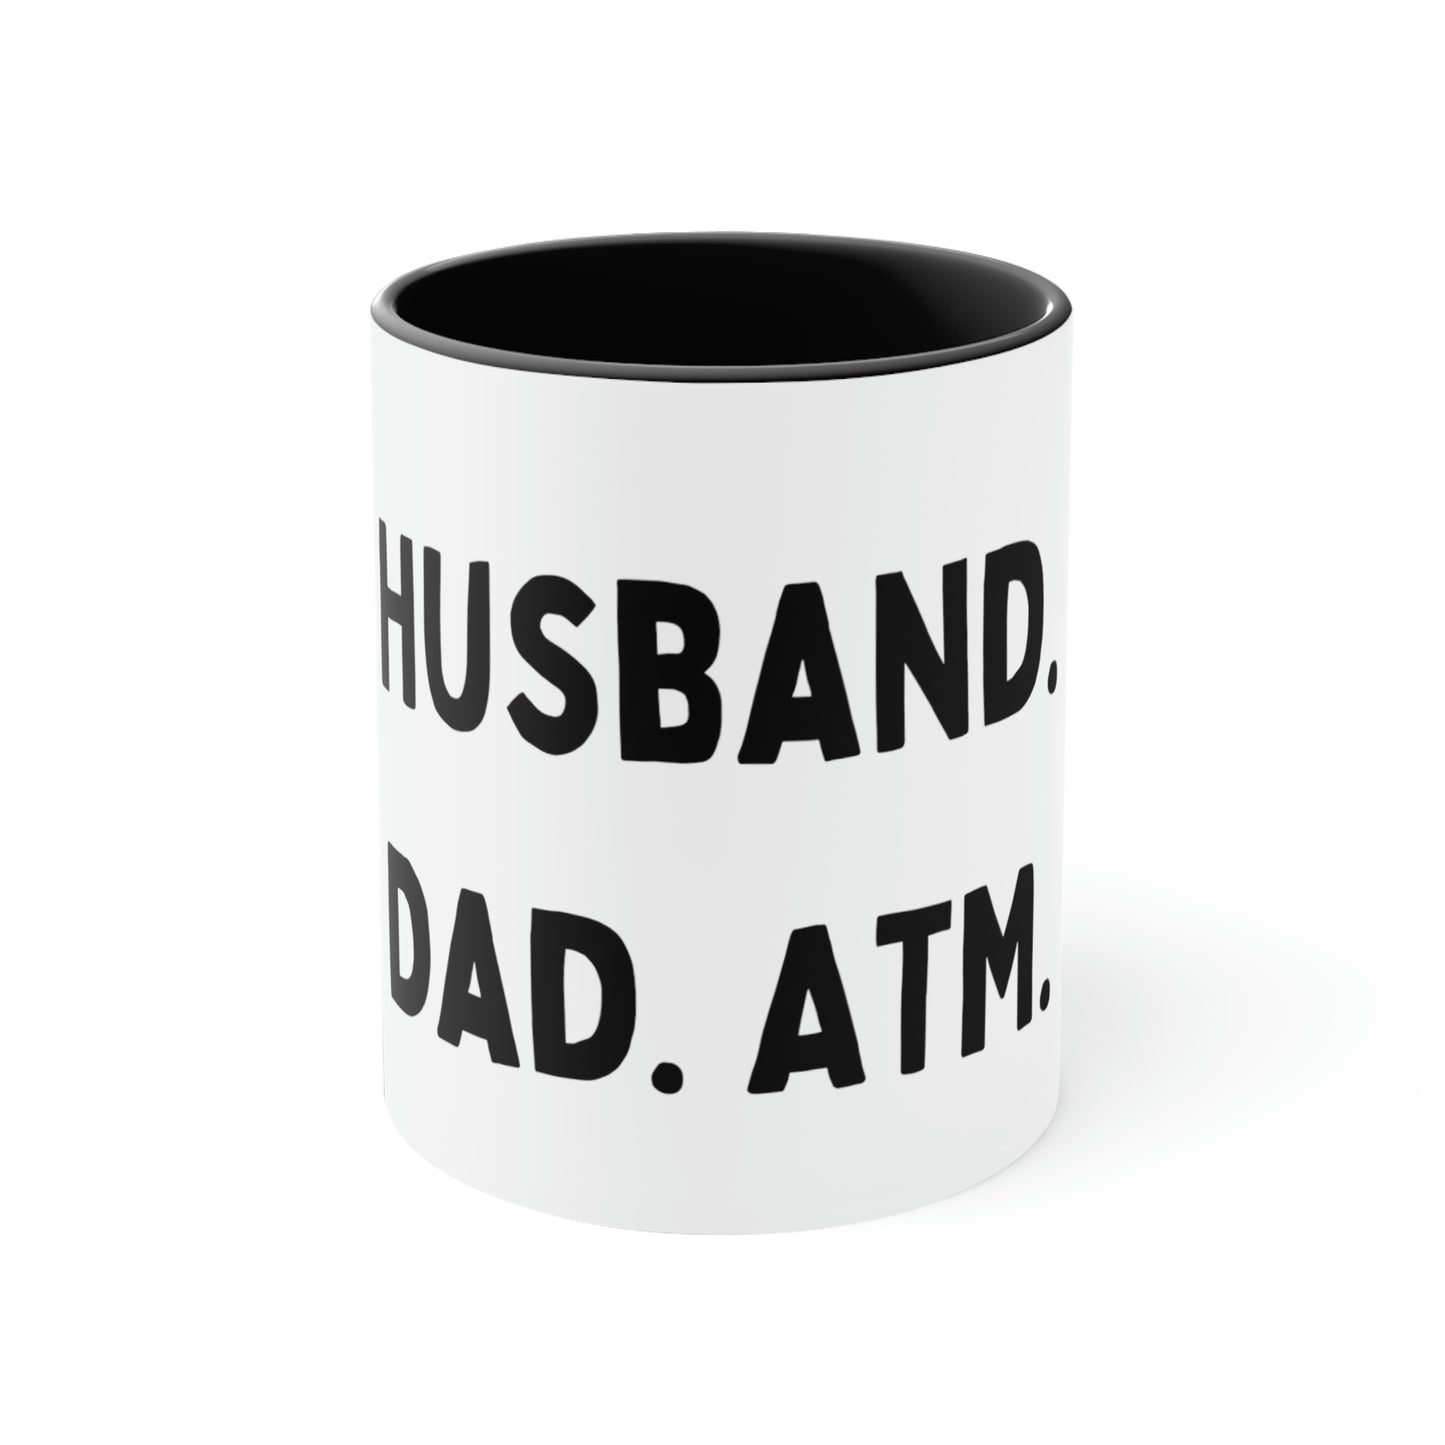 Husband. Dad. ATM. Accent Coffee Mug, 11oz